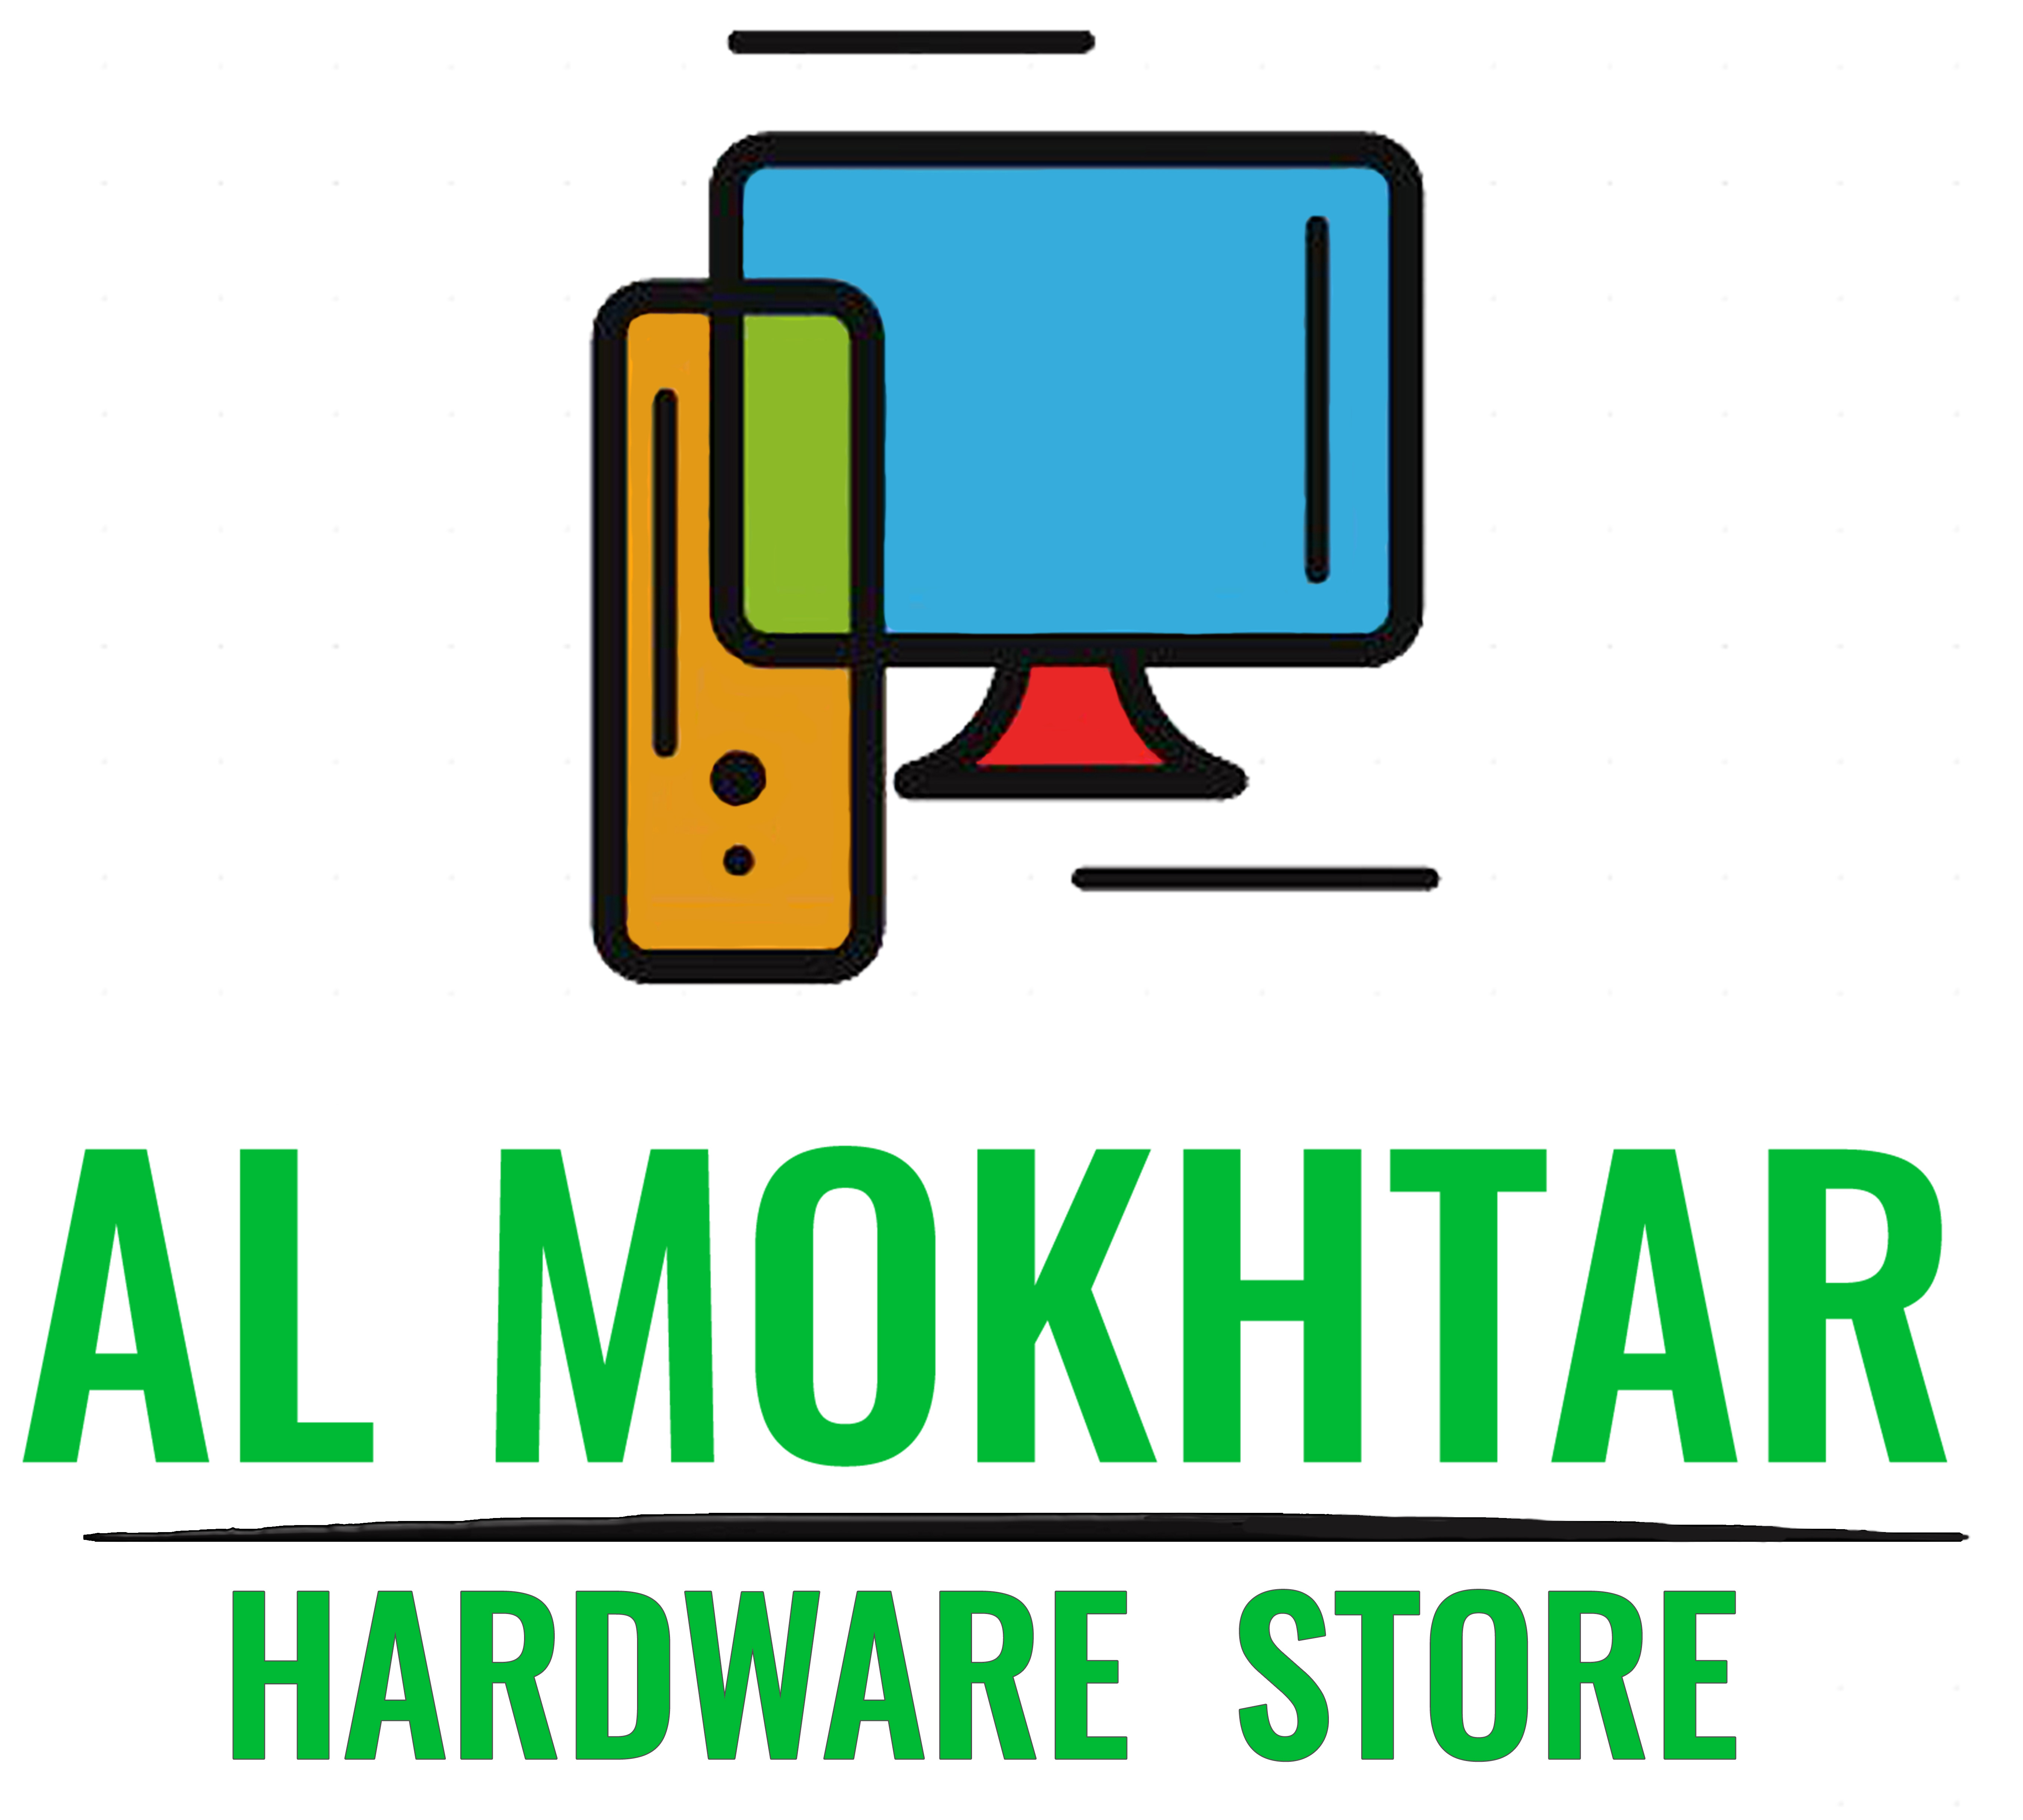 ElMokhtar Hardware Store